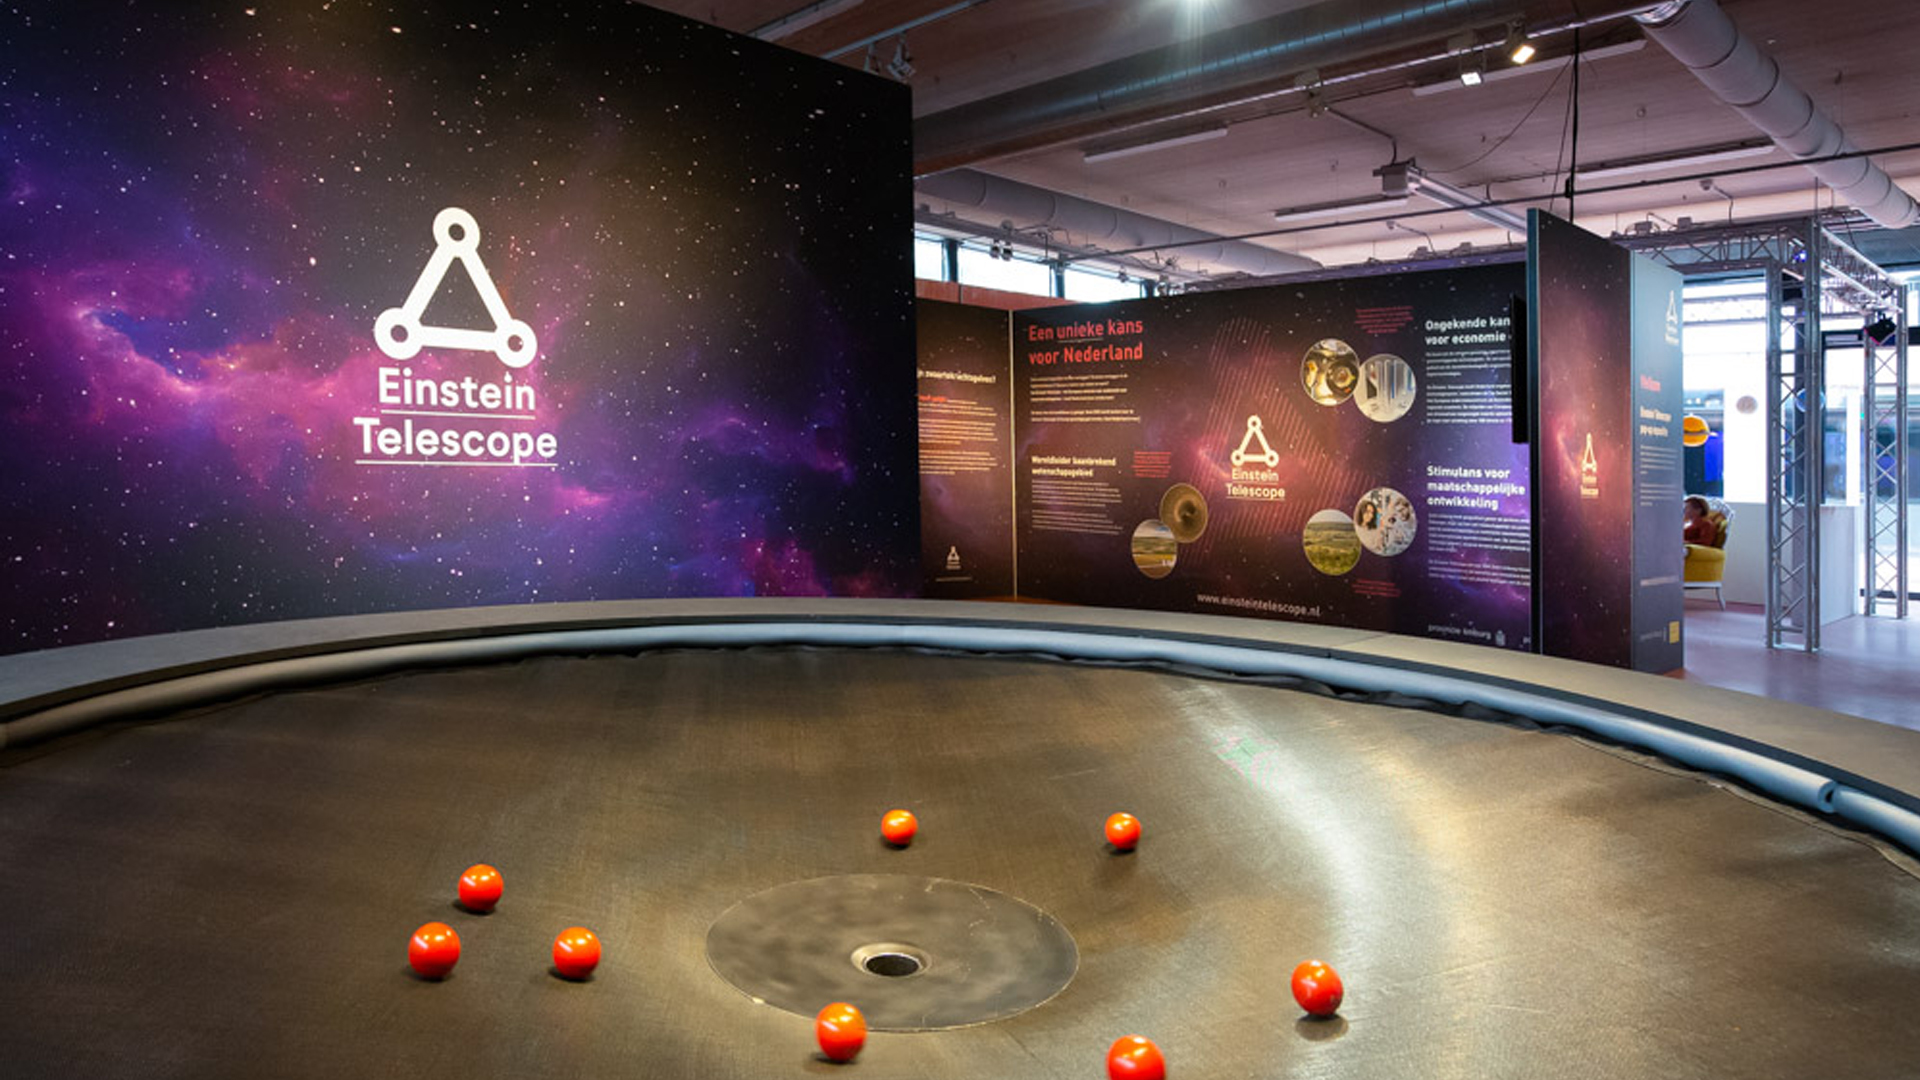 Onderwijscentrum over Einstein Telescope krijgt plek bij Discovery Museum in Kerkrade